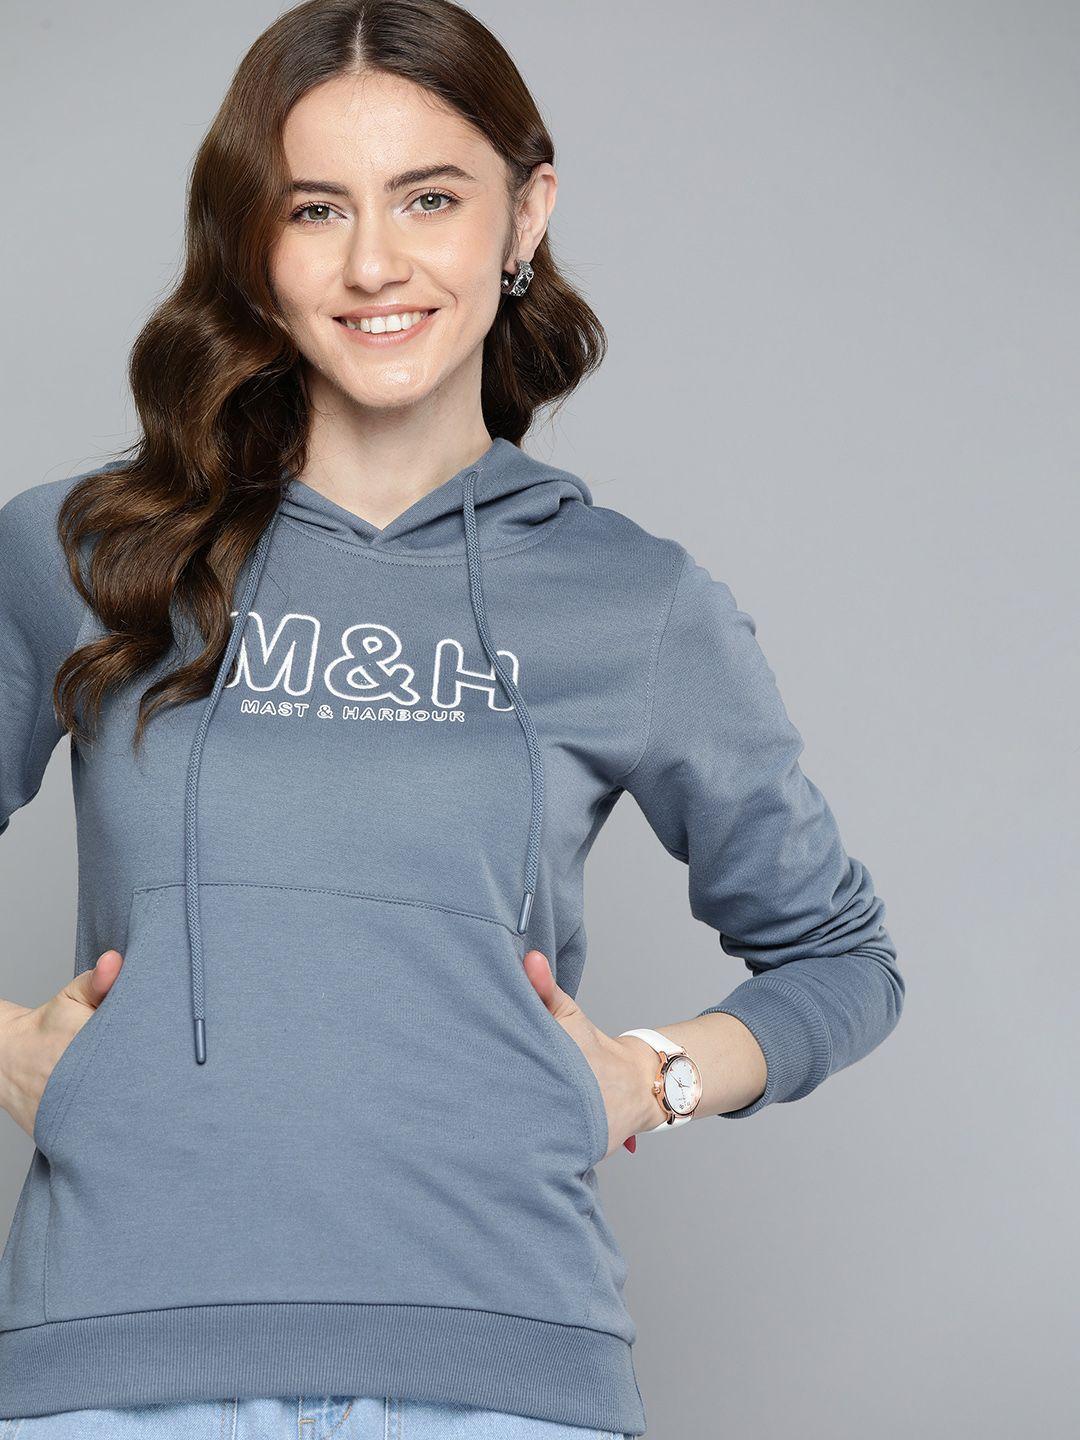 mast-&-harbour-brand-logo-printed-hooded-sweatshirt